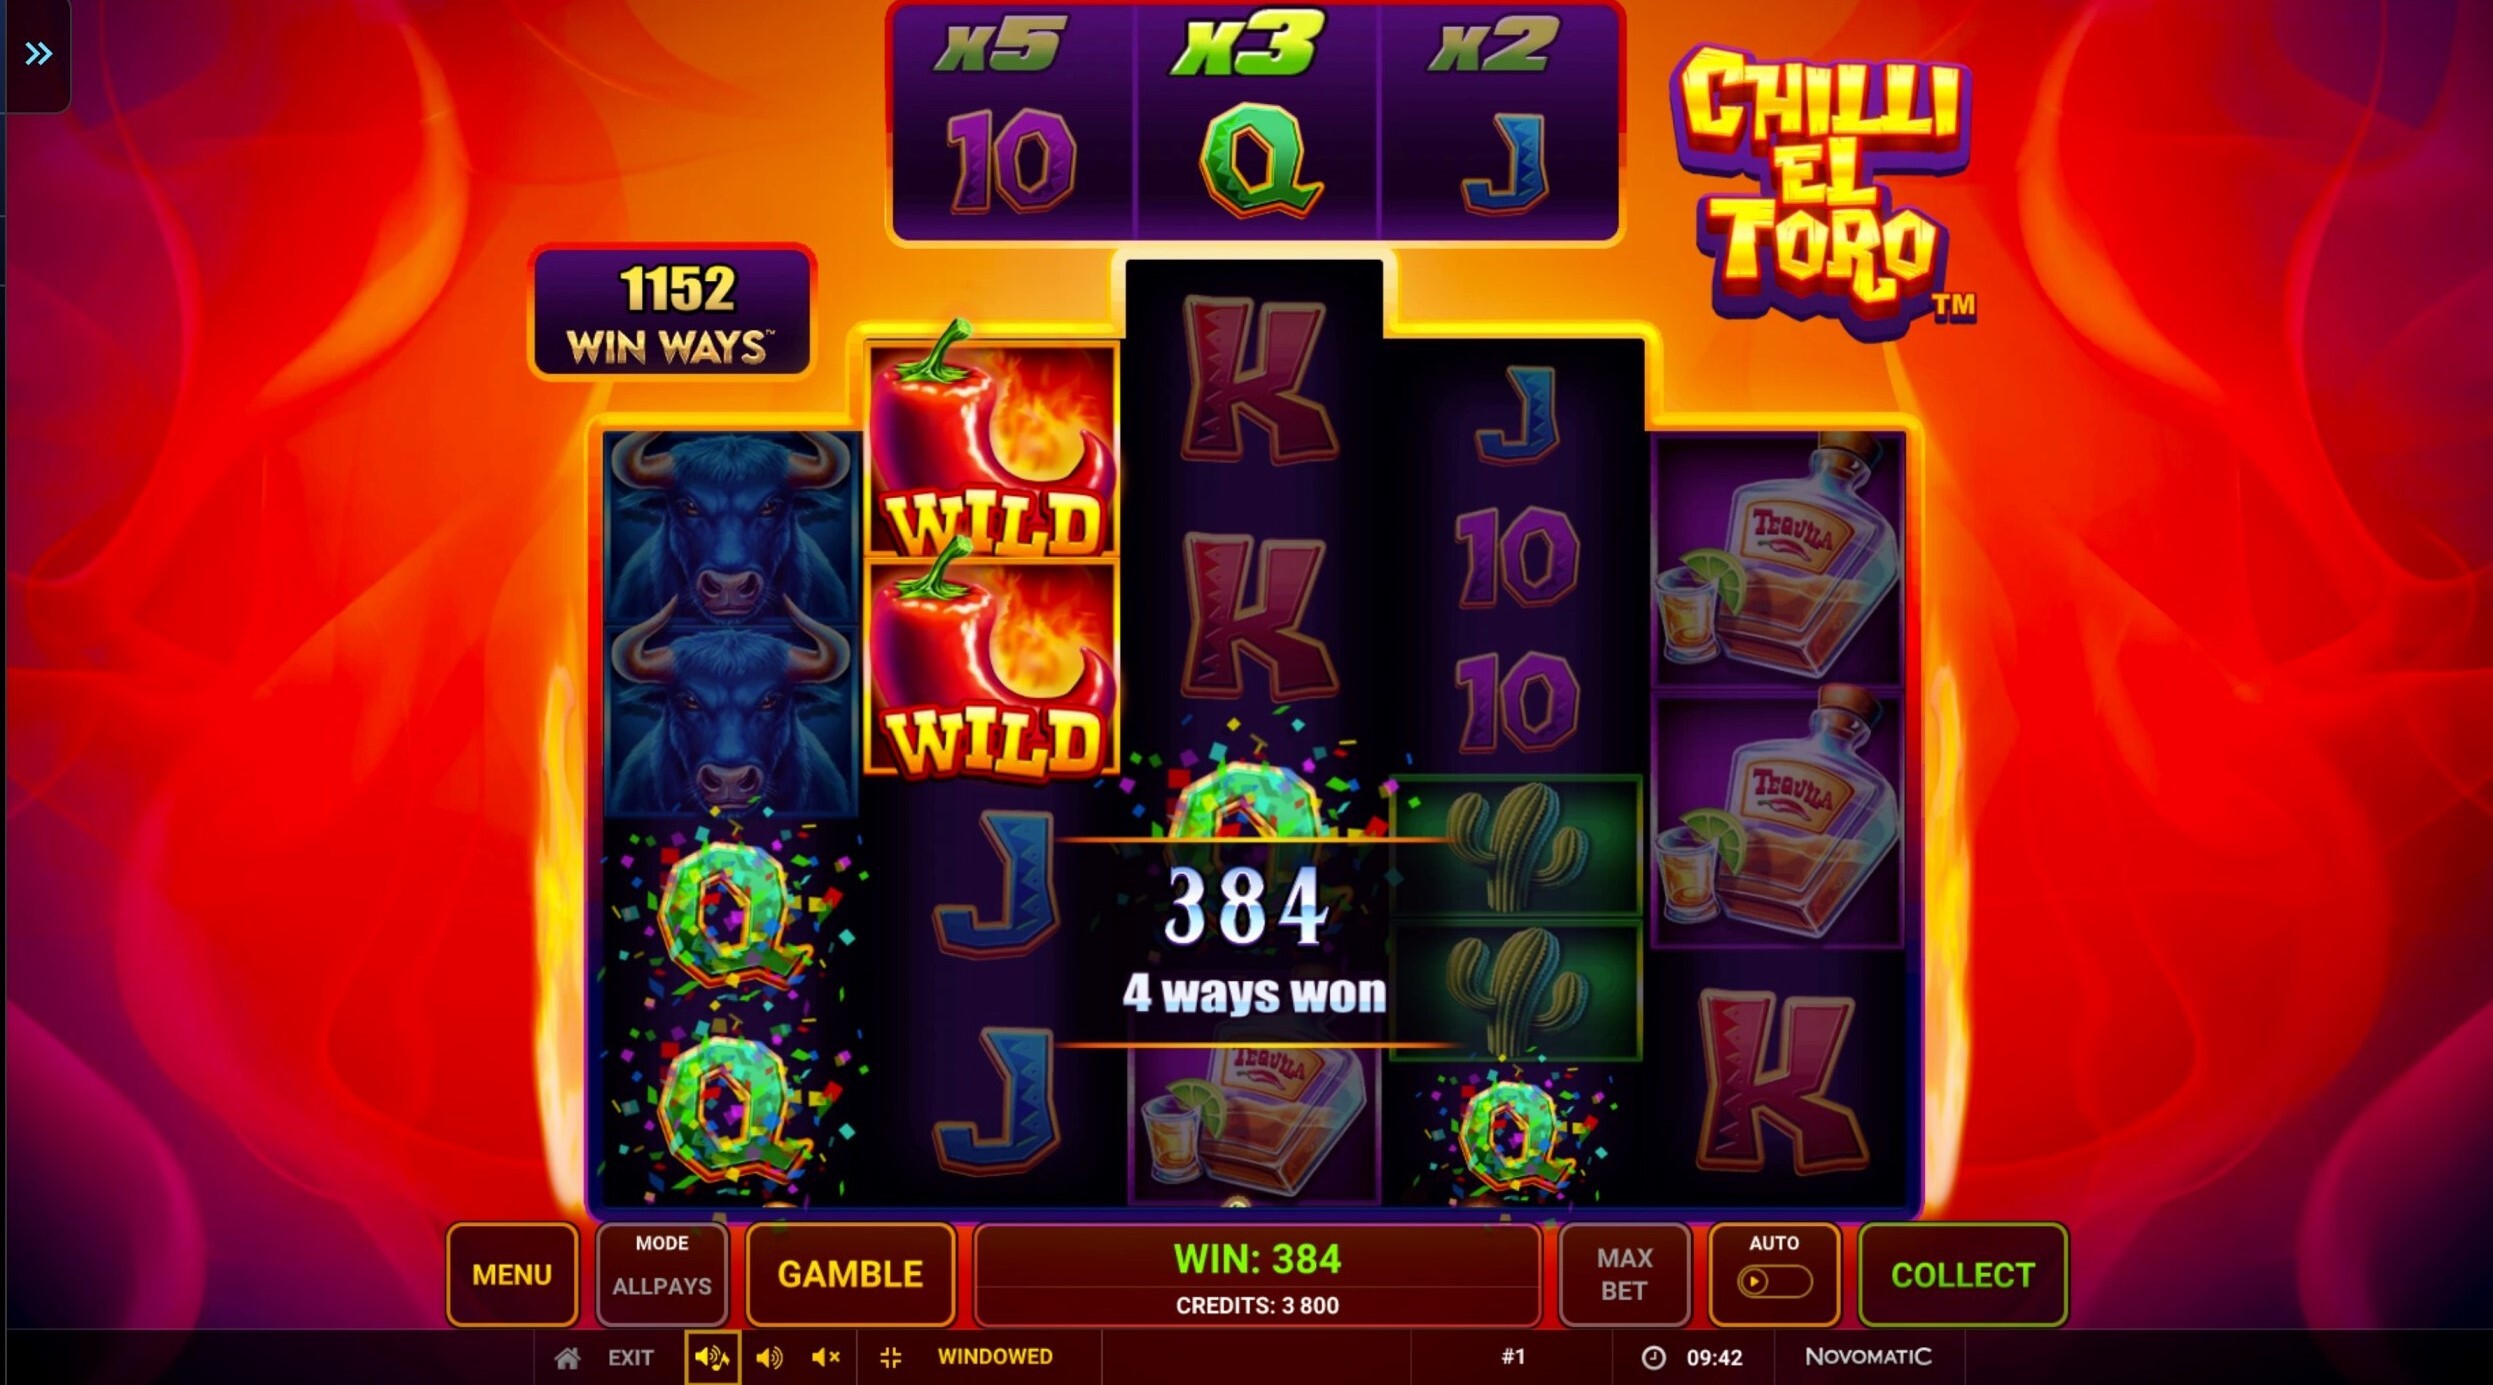 Chilli El Toro Slot Gameplay